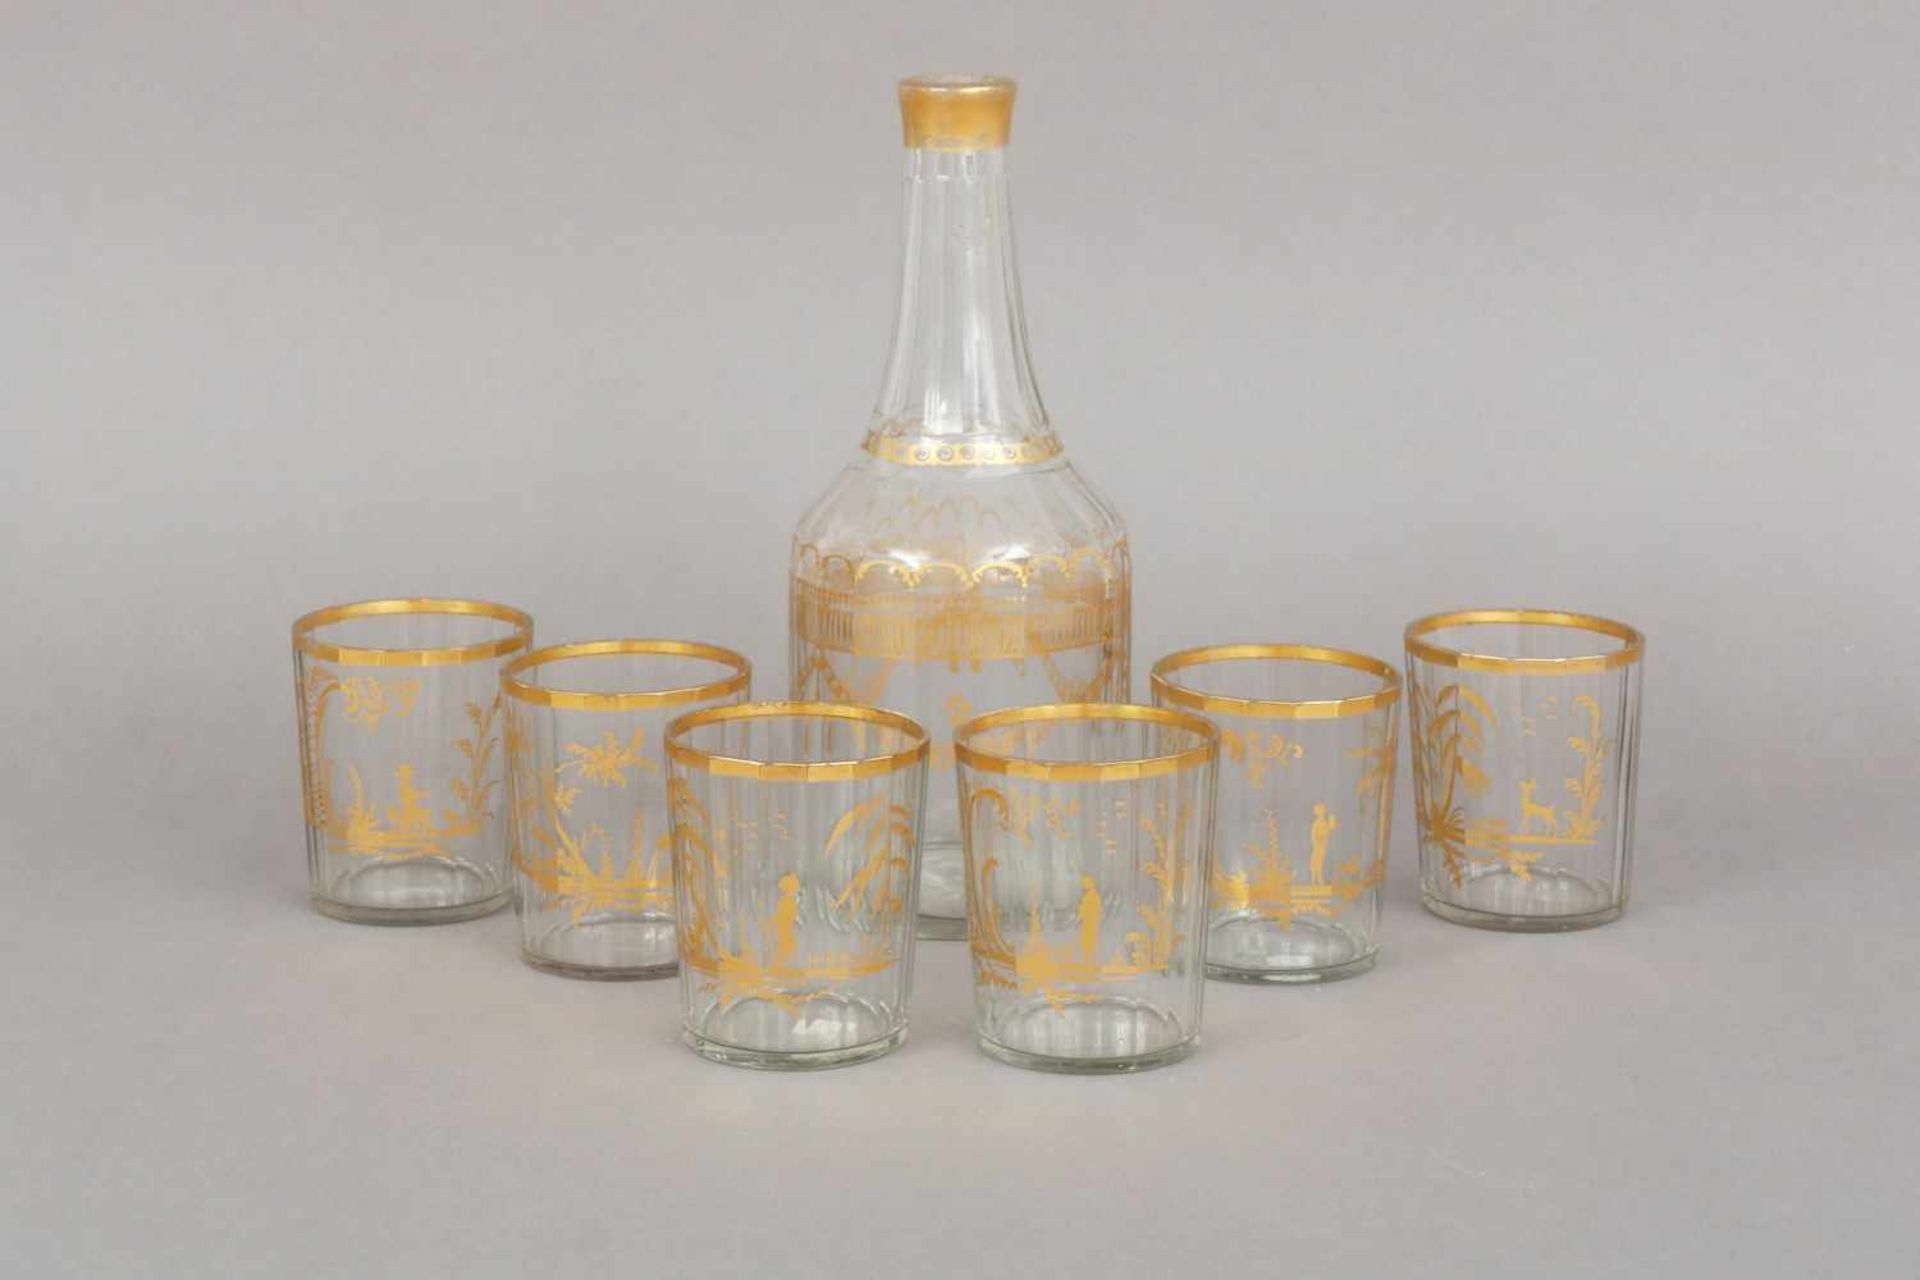 Böhmisches Trinkgeschirr des 19. Jahrhundertsfarbloses Glas, bestehend aus 1 Karaffe und 6